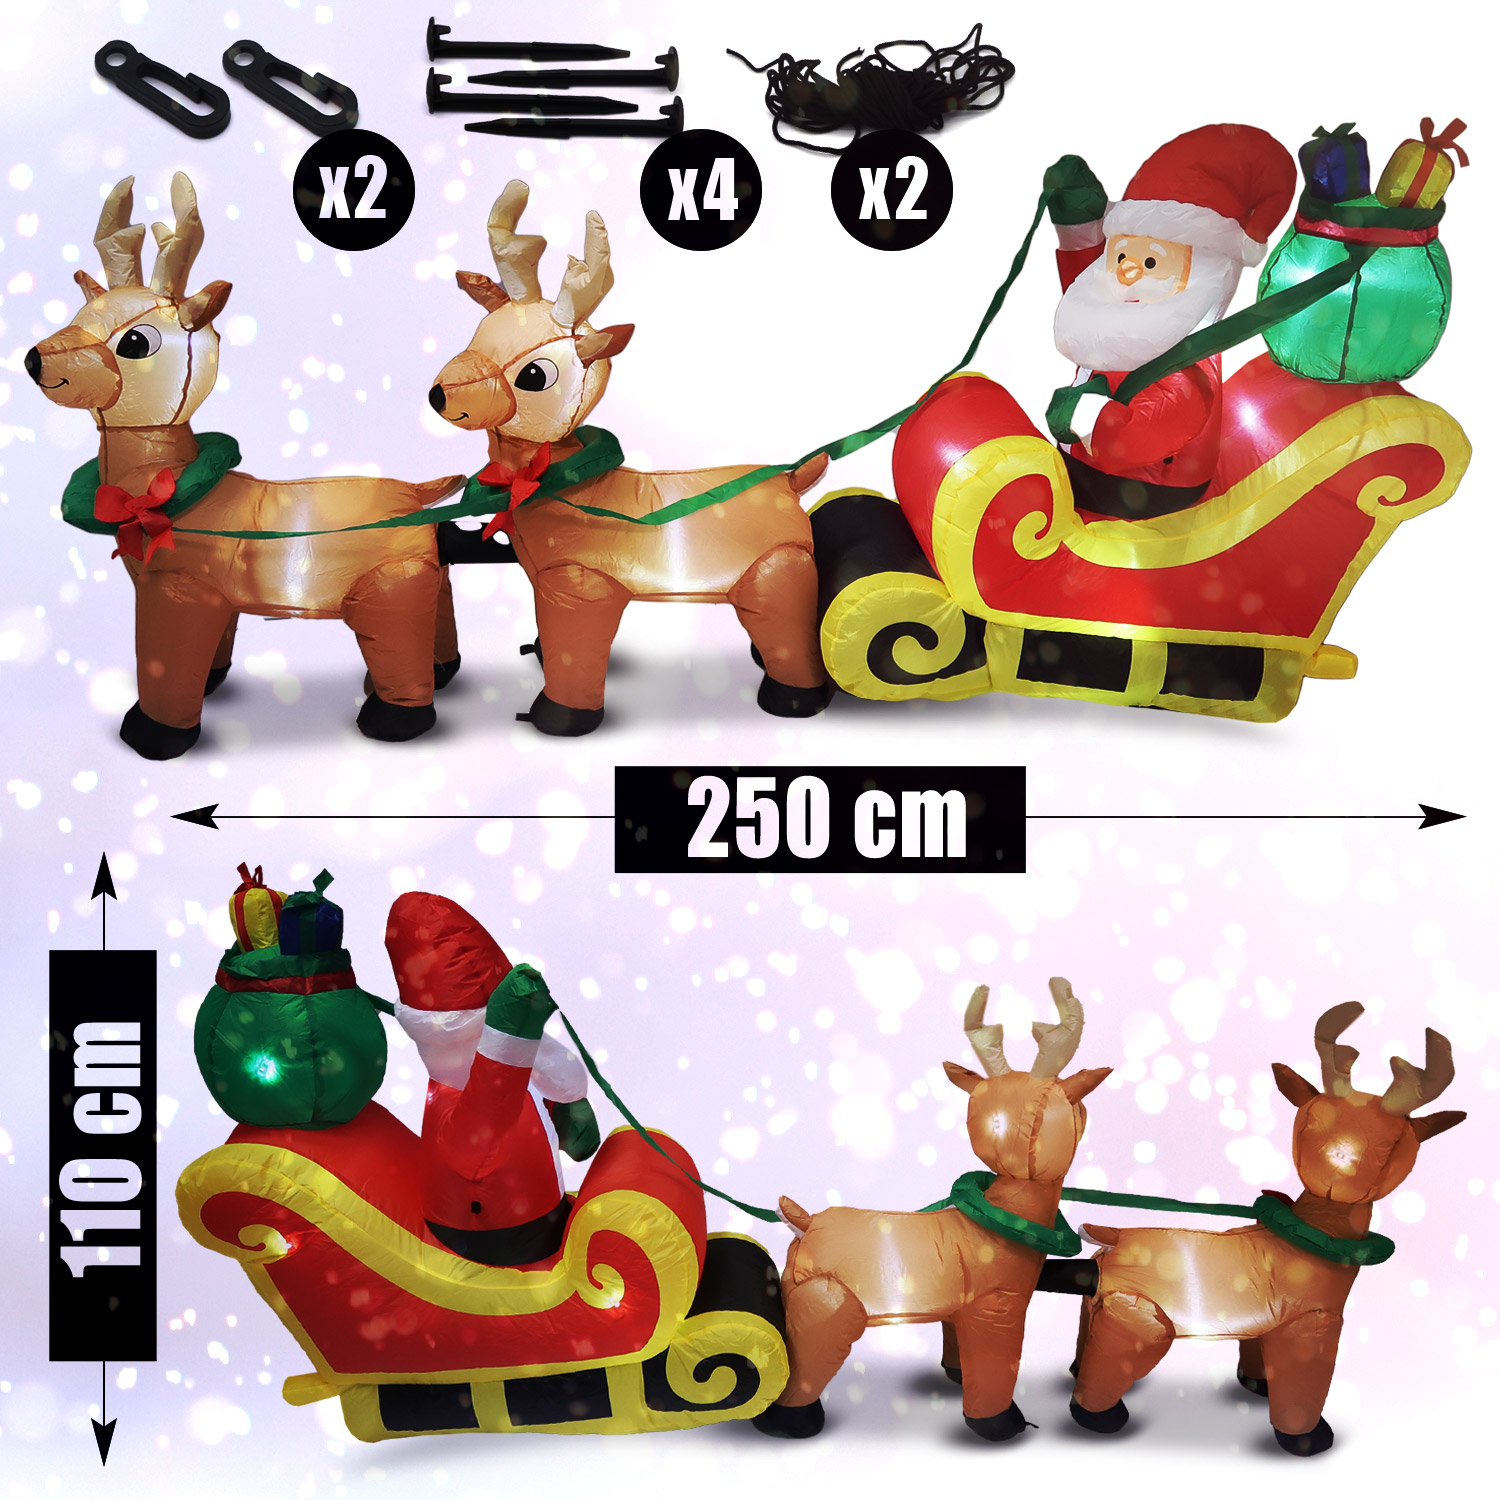 Tronje, Aufblasbare Rentierschlitten mit Weihnachtsmann - 250cm 5 LEDs Gebläse Netzteil